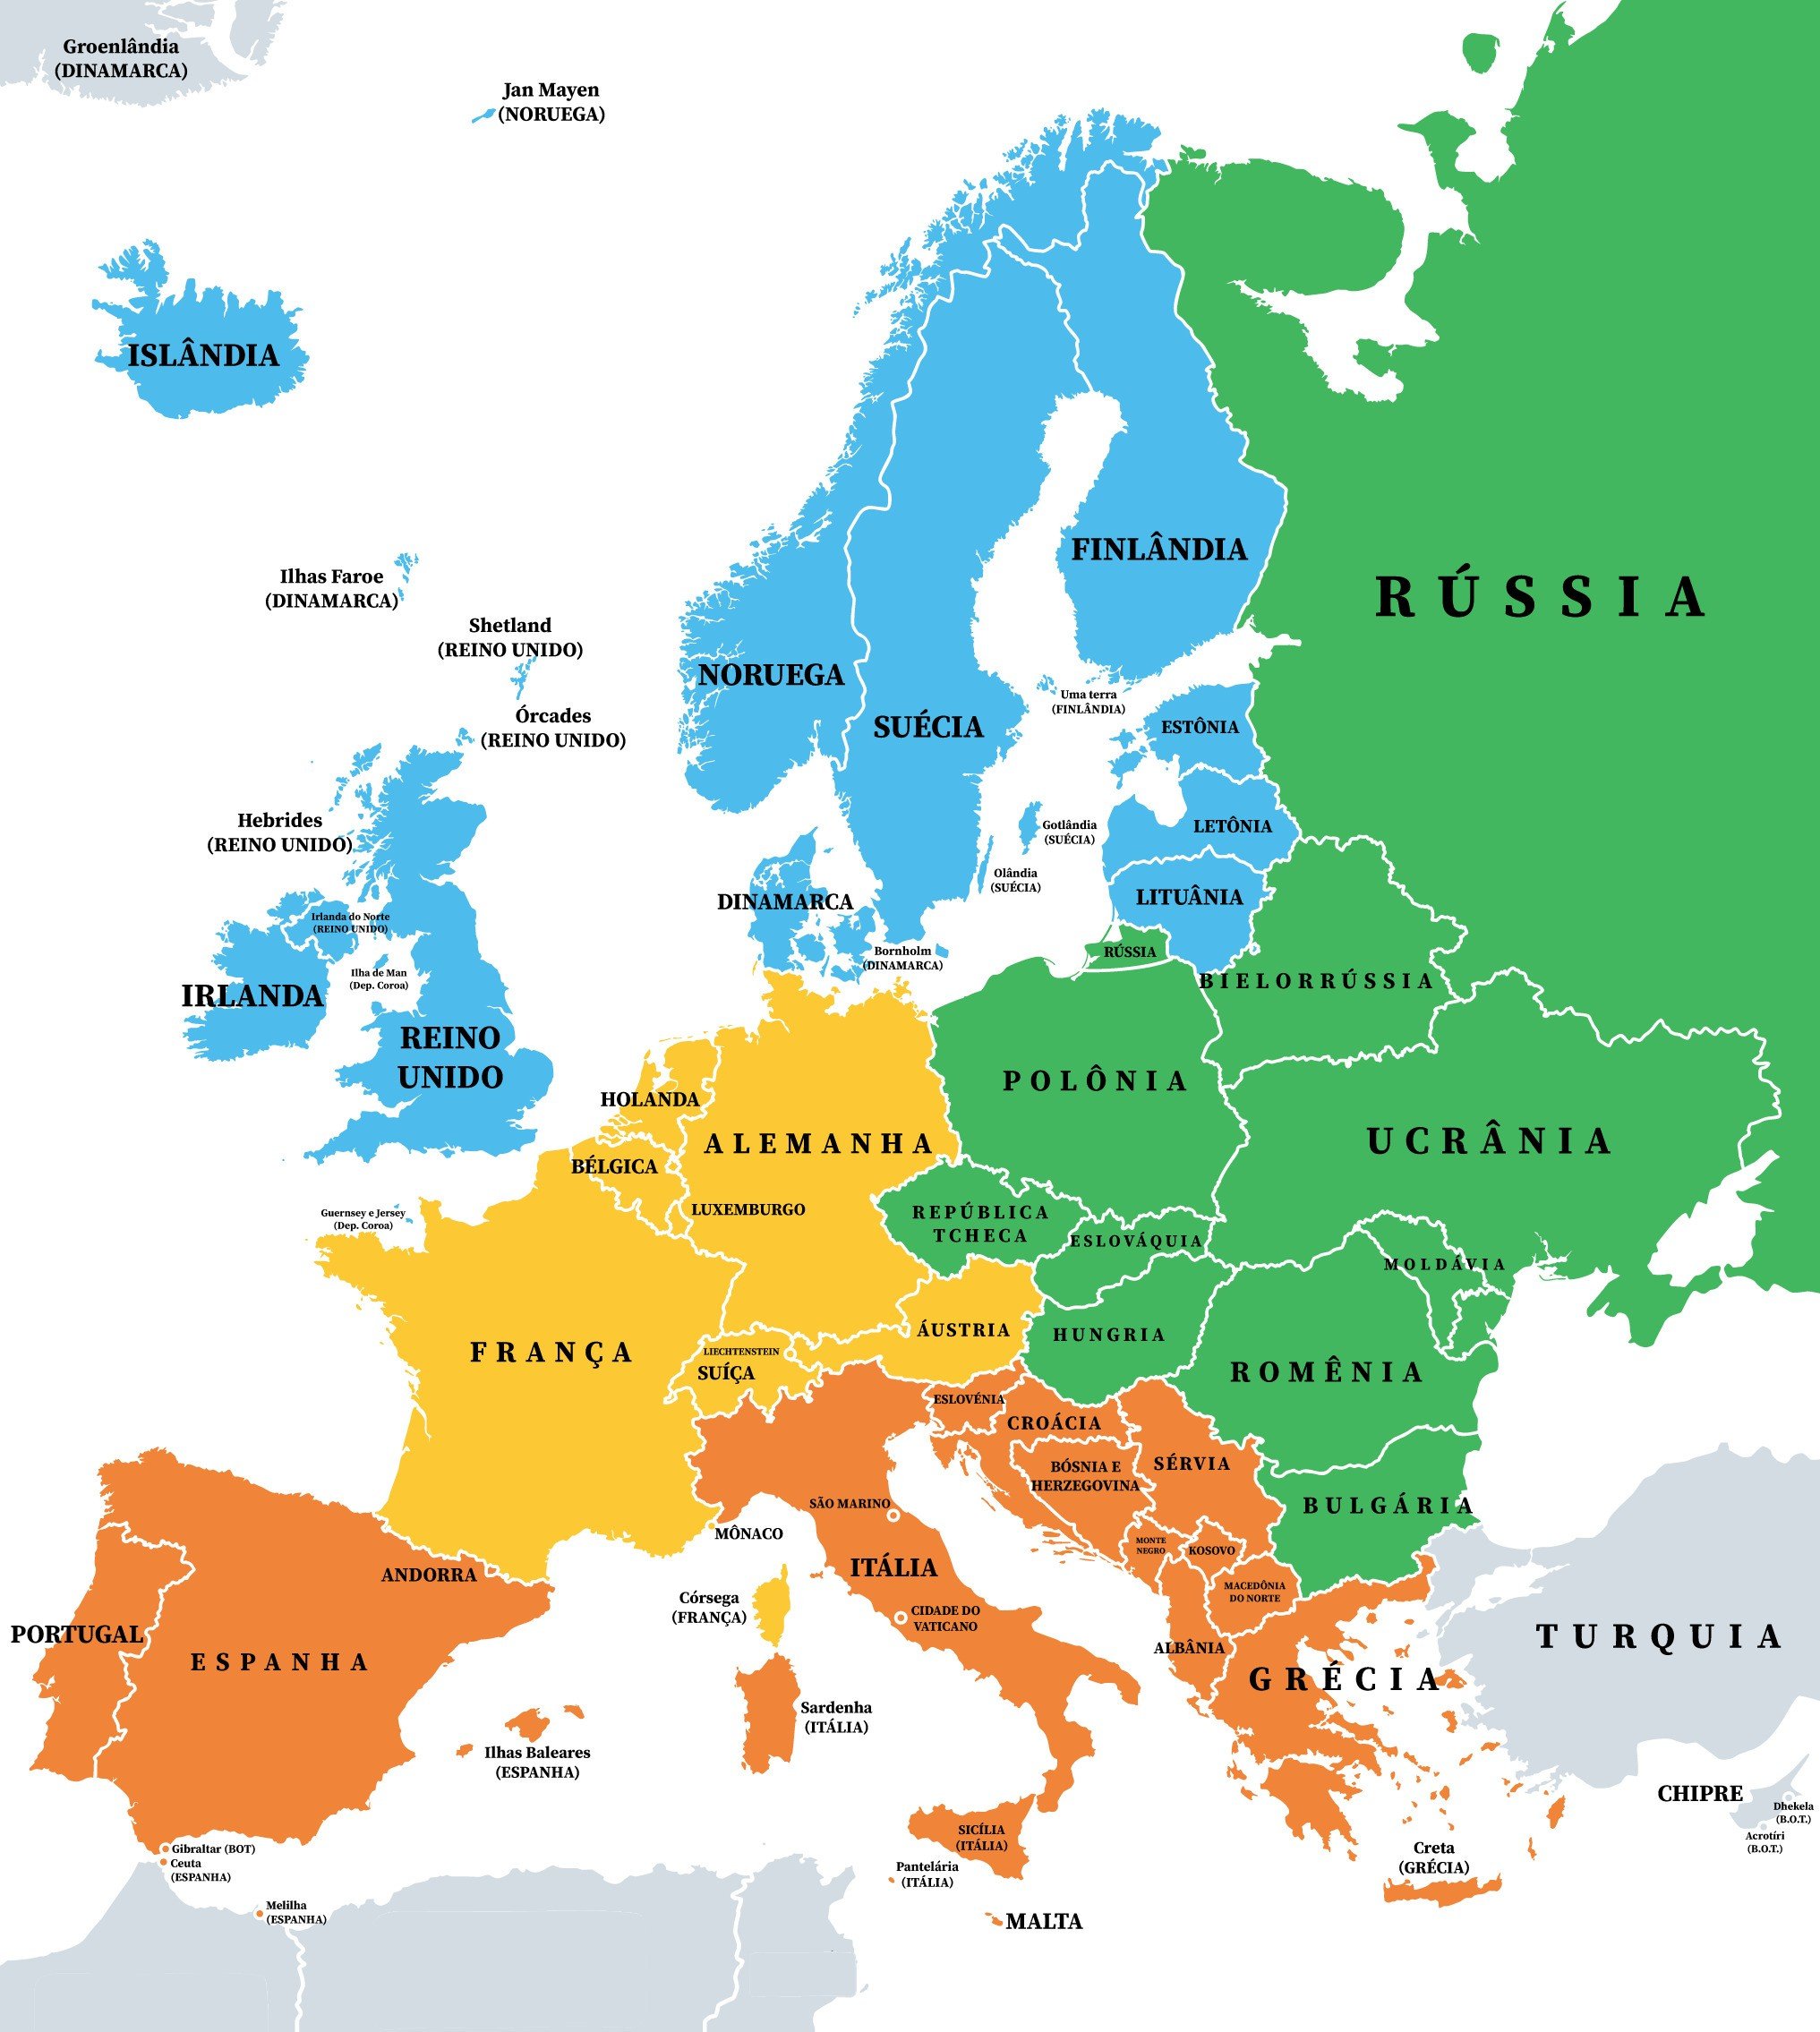 Mapa político da Europa.